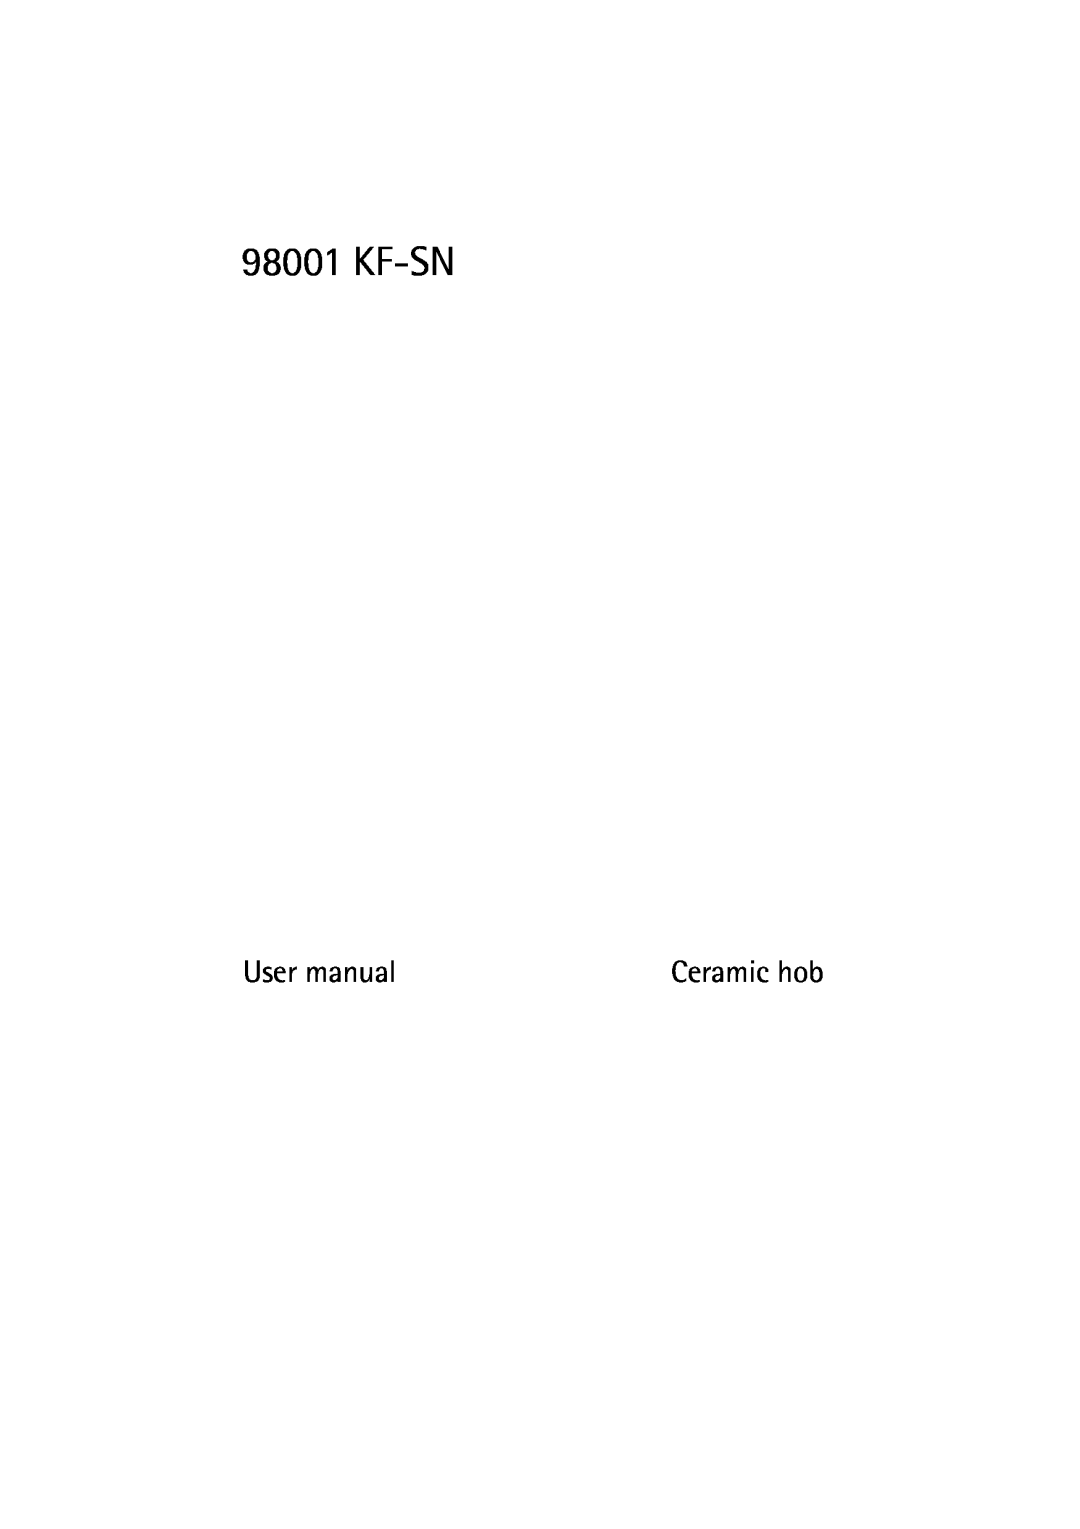 Electrolux 98001 KF SN user manual User manual, Ceramic hob 